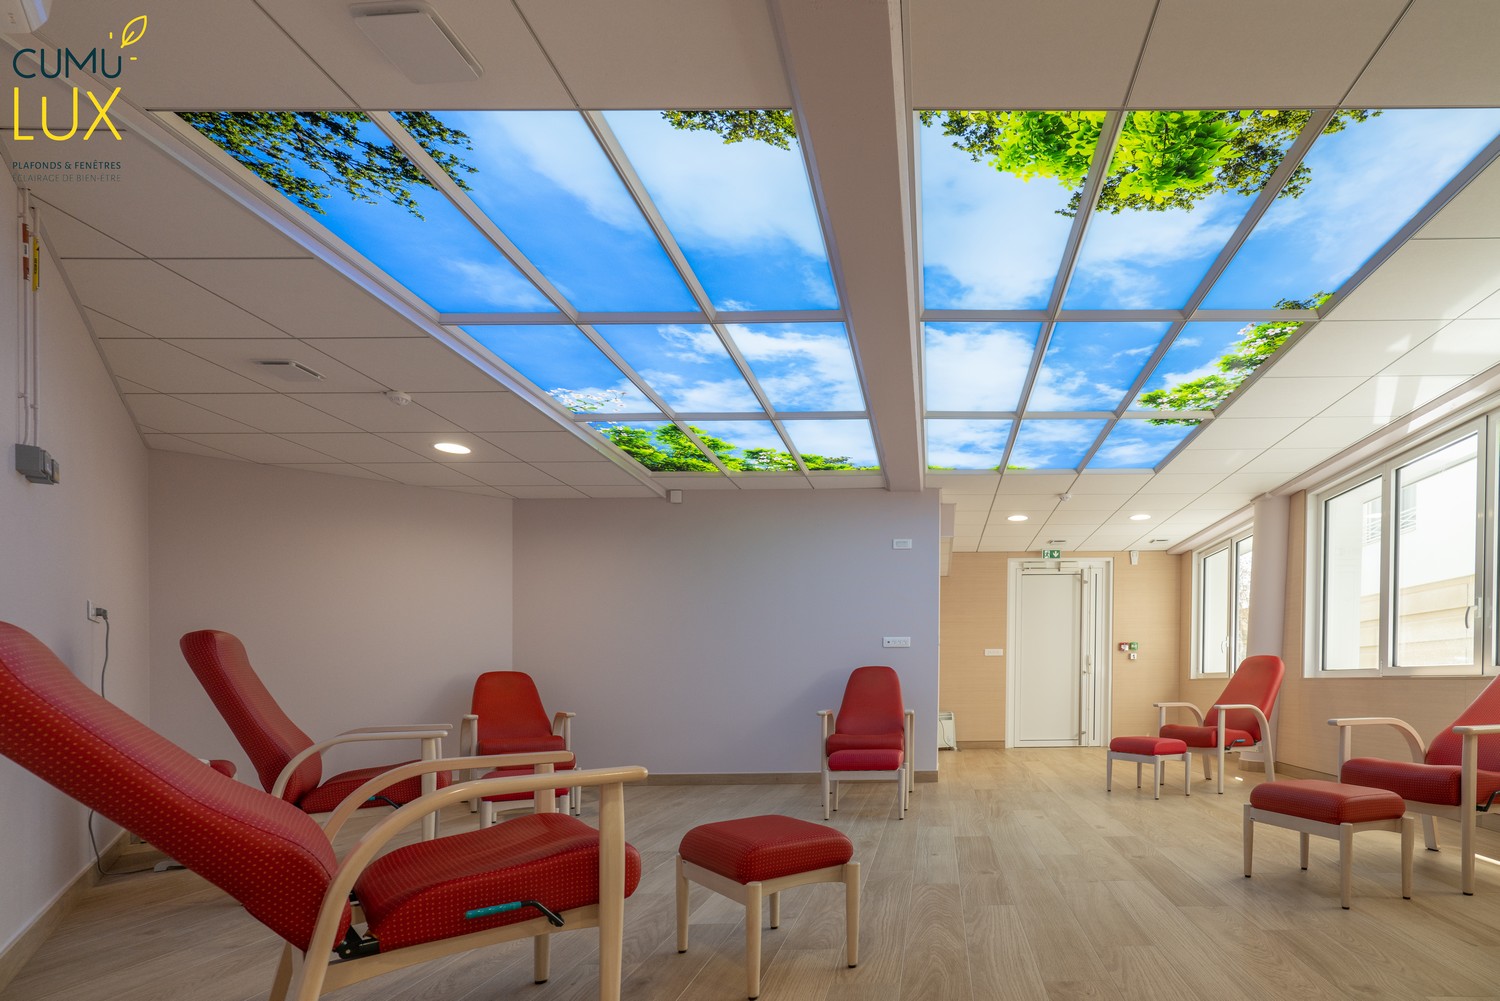 Faux plafonds lumineux pour éclairer une salle de repos aveugle.